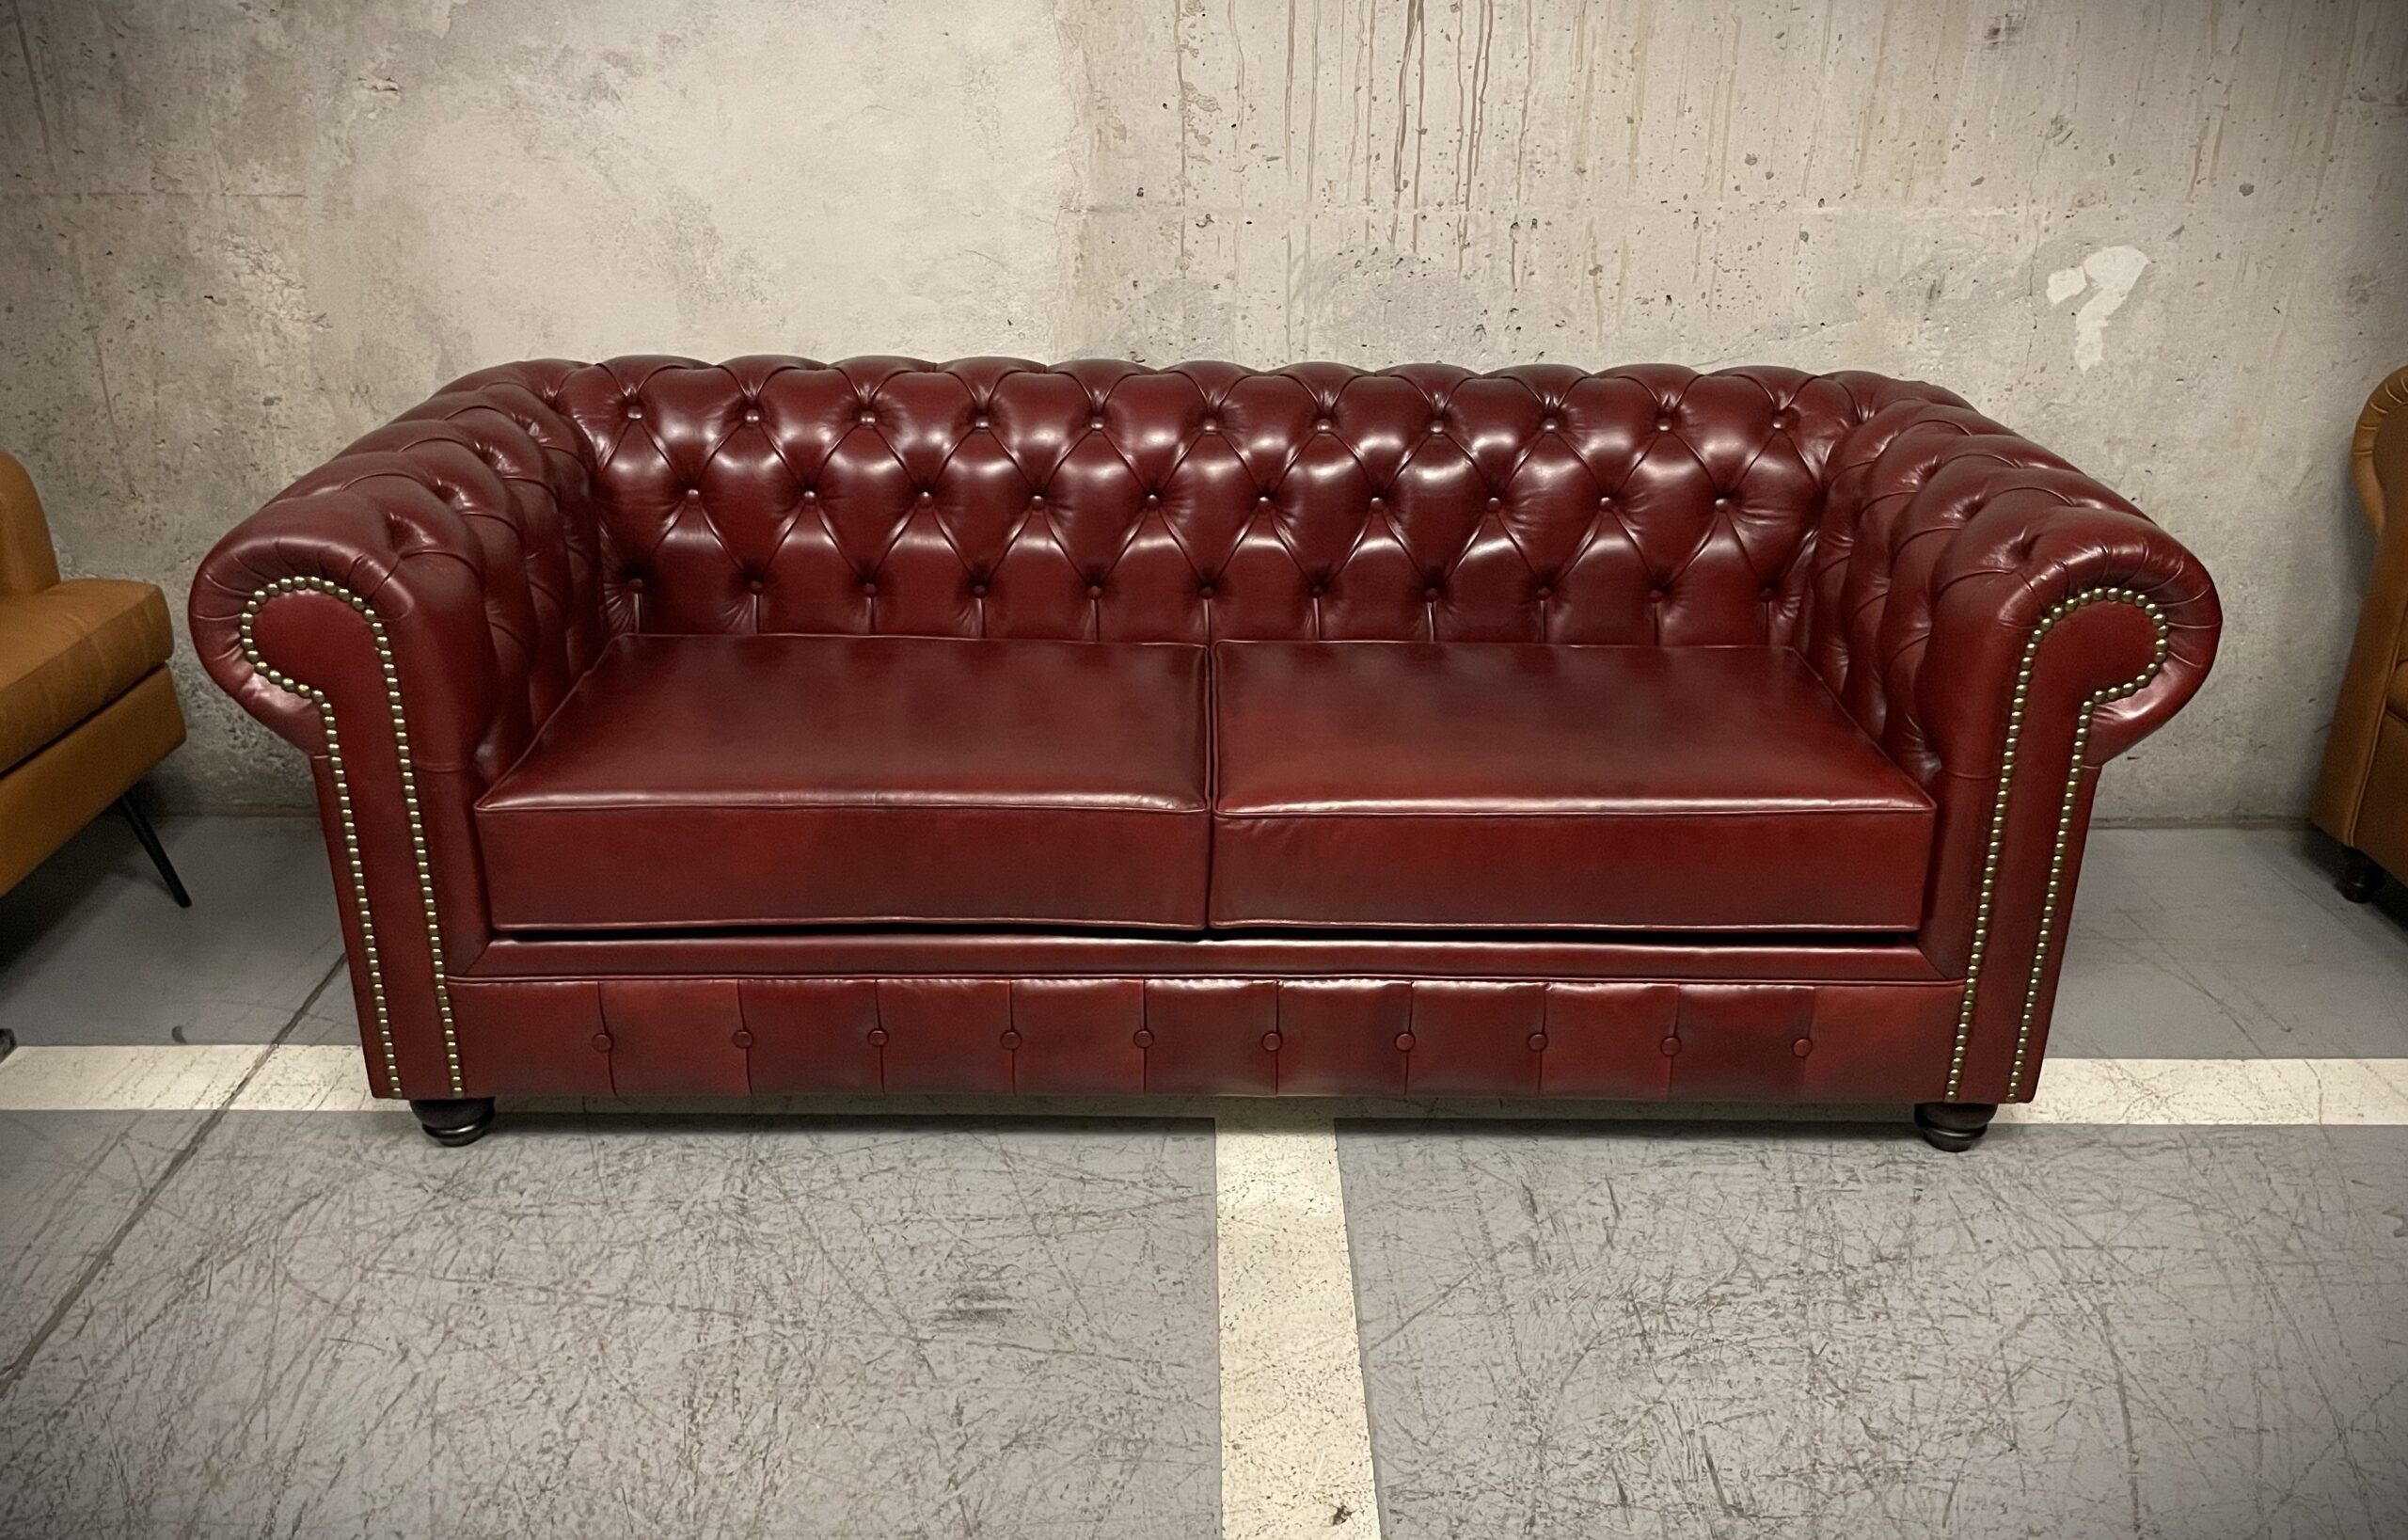 Sofa de Cuero – Sofá Chesterfield Color Caledonia Furia Red, Cojines lisos, Tachas, respaldo Recto Clásico, Cuero 100% Natural Uruguayo